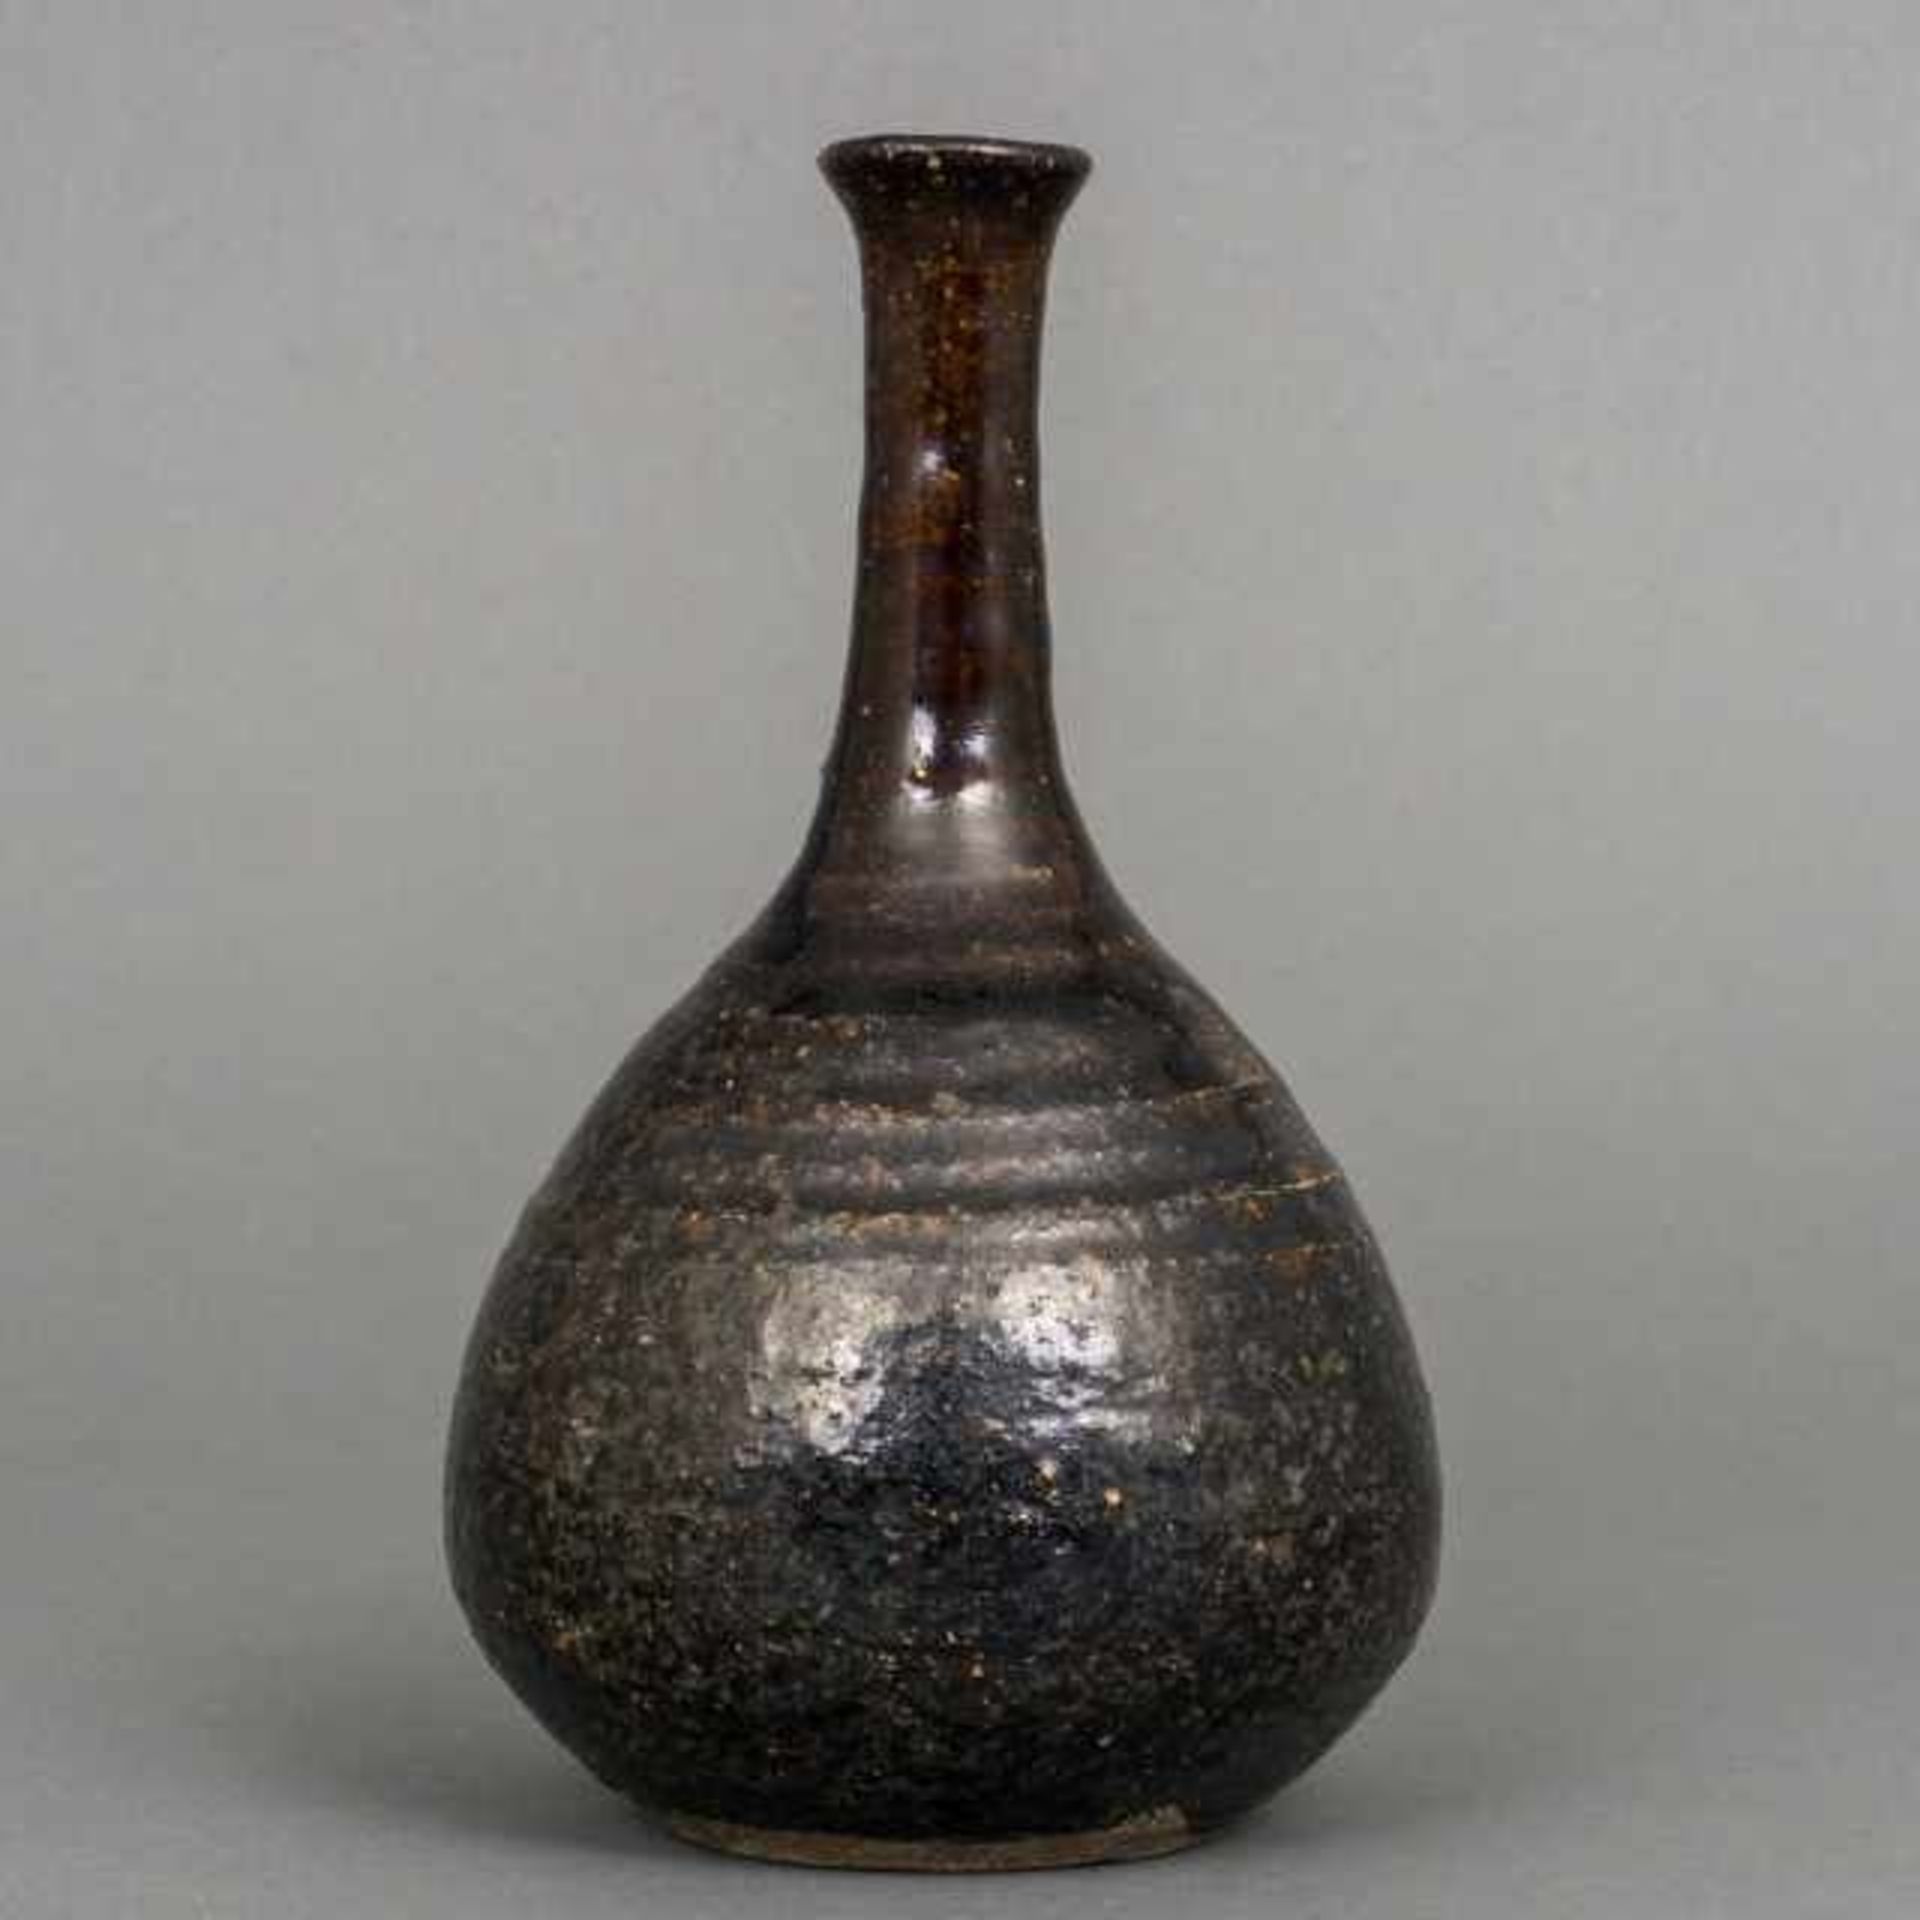 Seto ware bottle vase with dark brown glaze, Japan, 19th century, provenance: Kunsthandel - Bild 2 aus 6